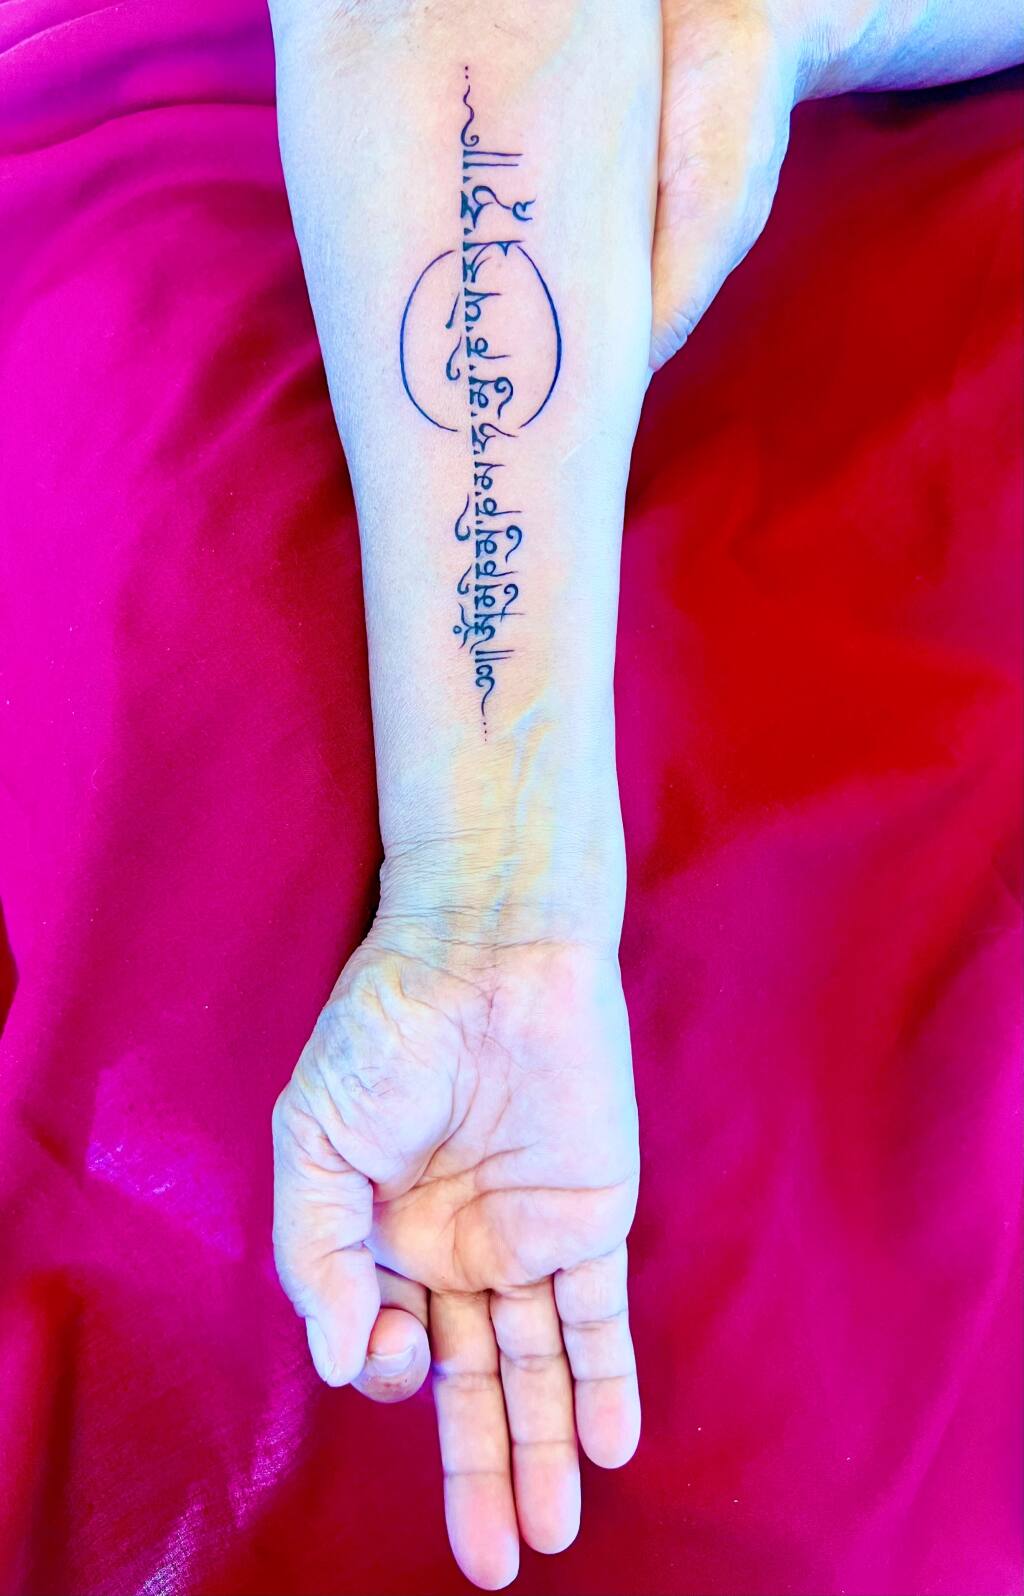 Mantras, tattoos and art: Inside Tibetan Healing Day